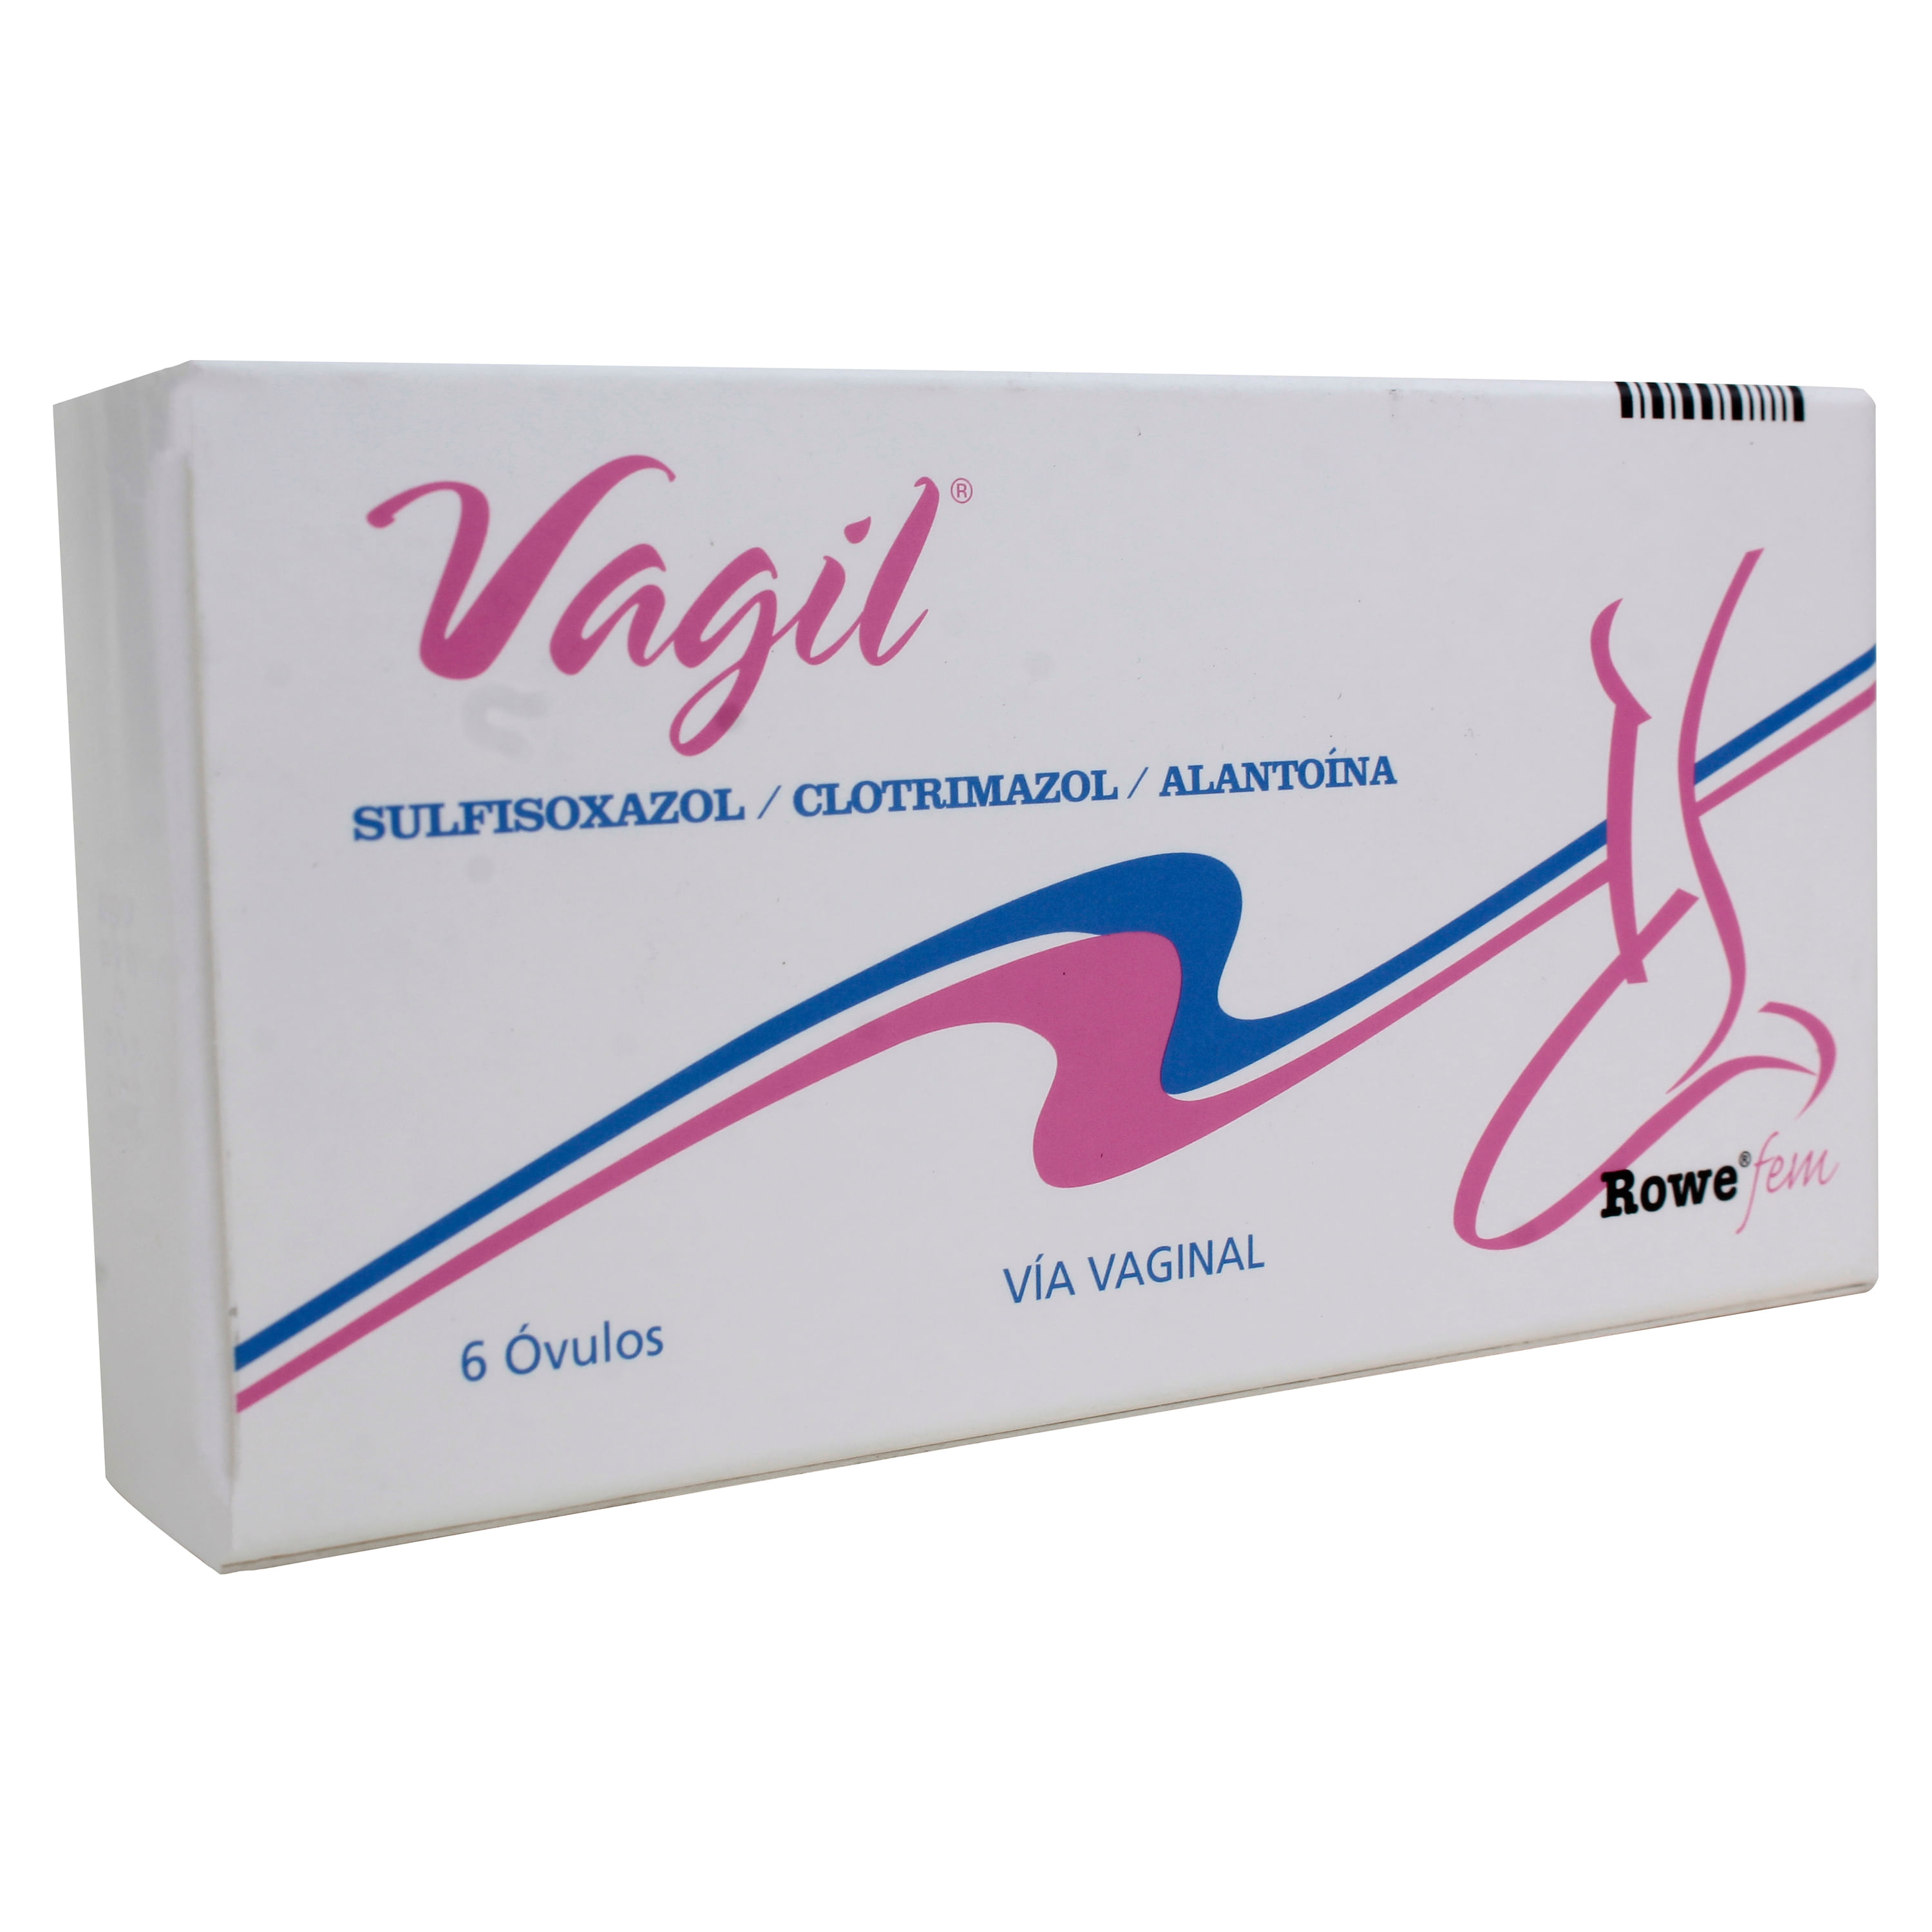 Comprar Vagil Rowe Ovulos Vaginales 6unid Una Caja Walmart Guatemala 8337